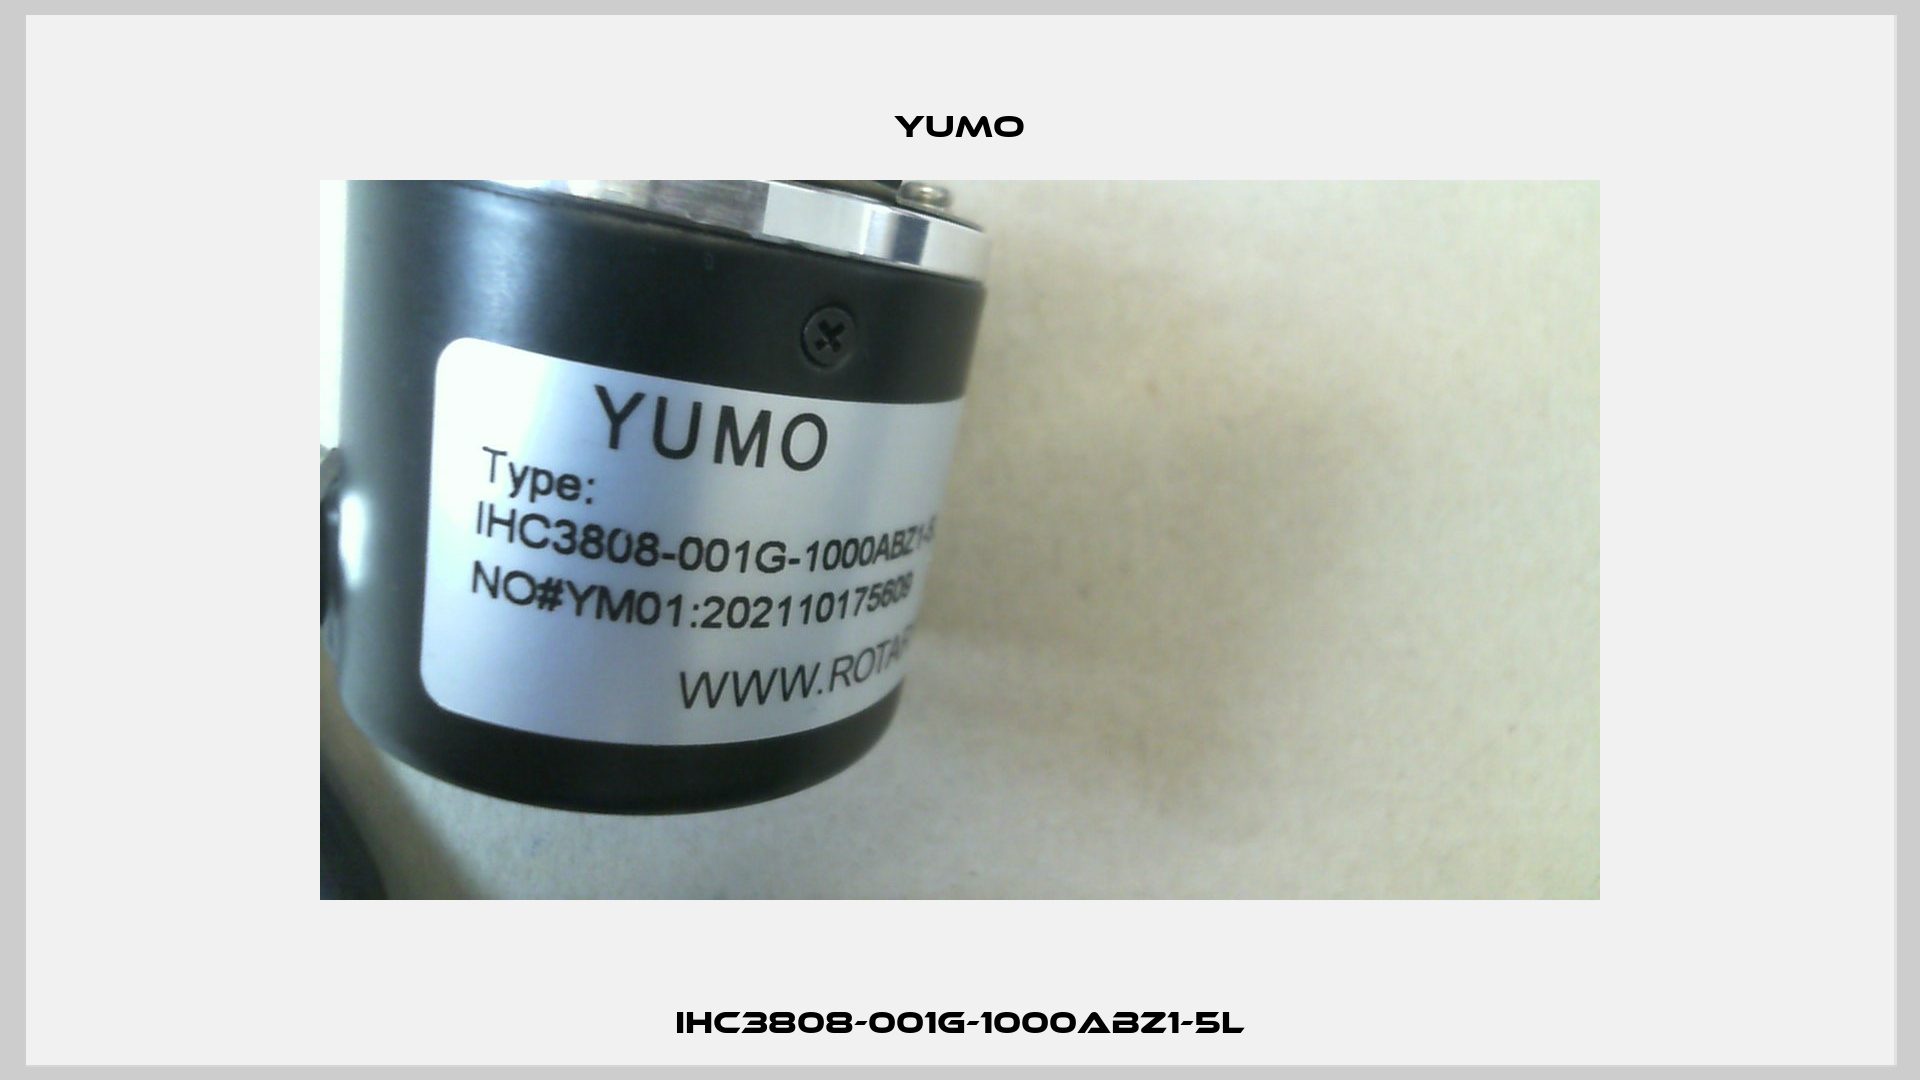 IHC3808-001G-1000ABZ1-5L Yumo